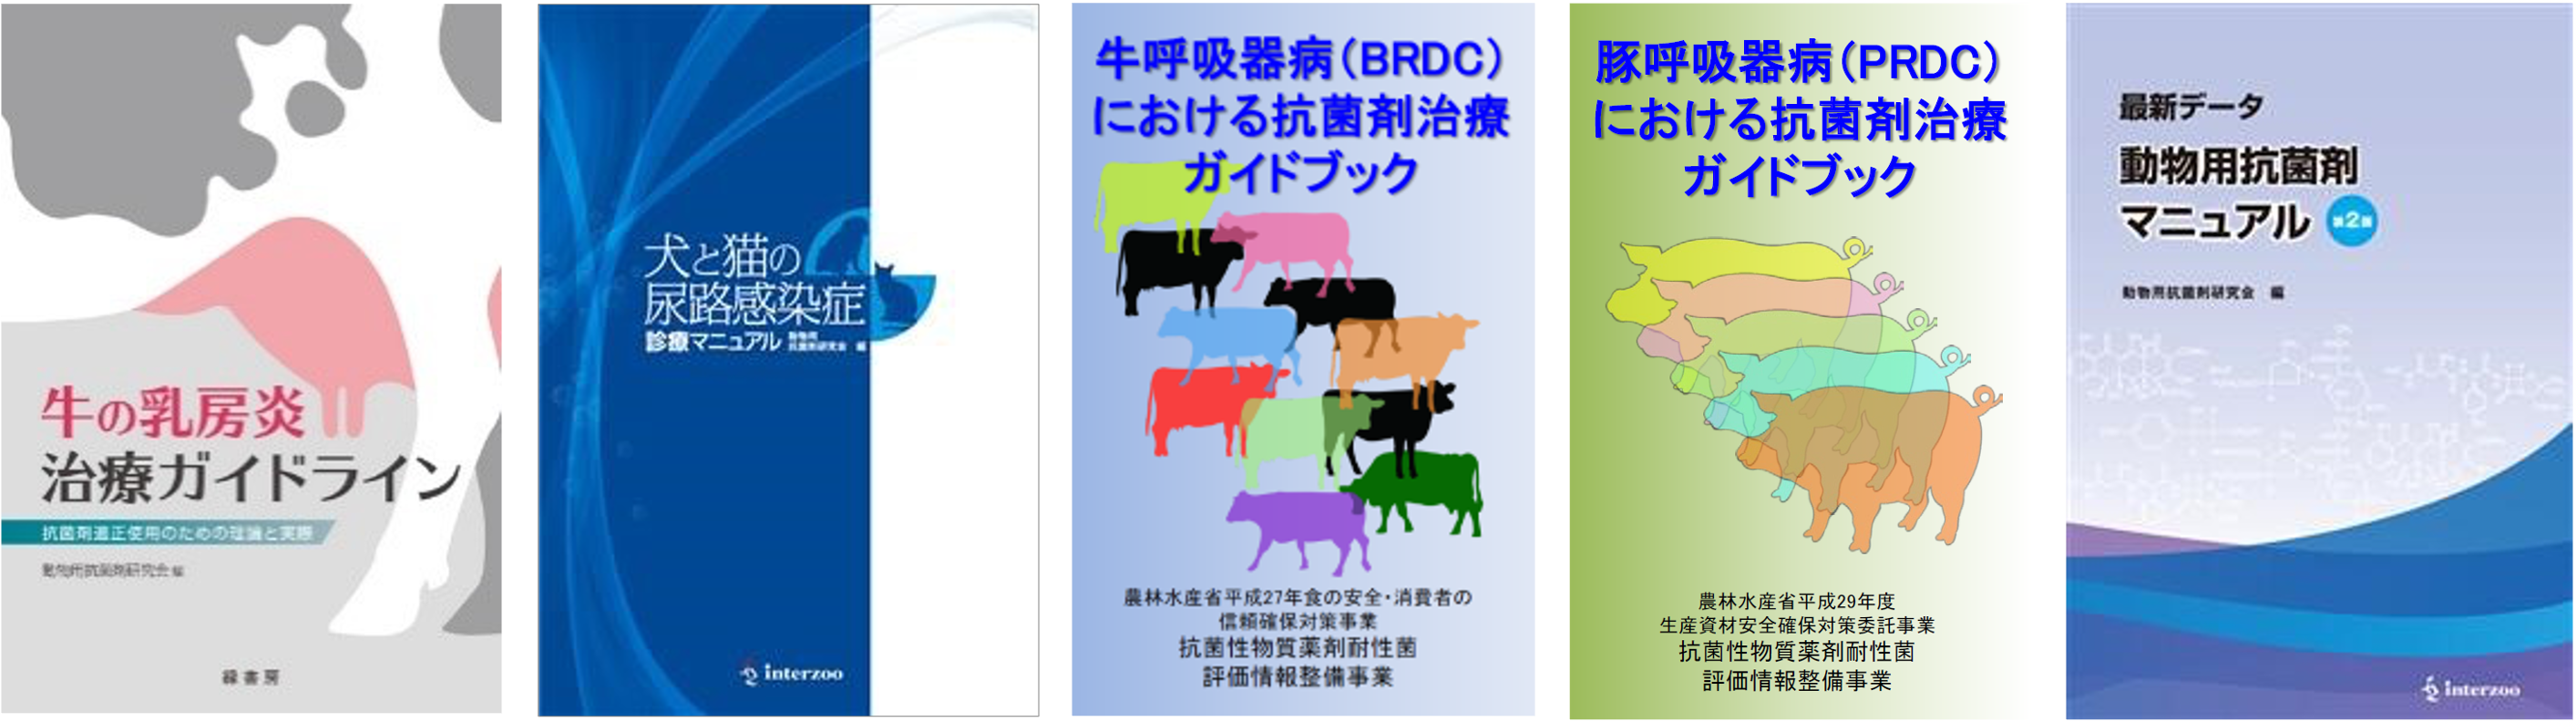 動物用抗菌剤研究会の4つのガイドブックと「動物用抗菌剤マニュアル」